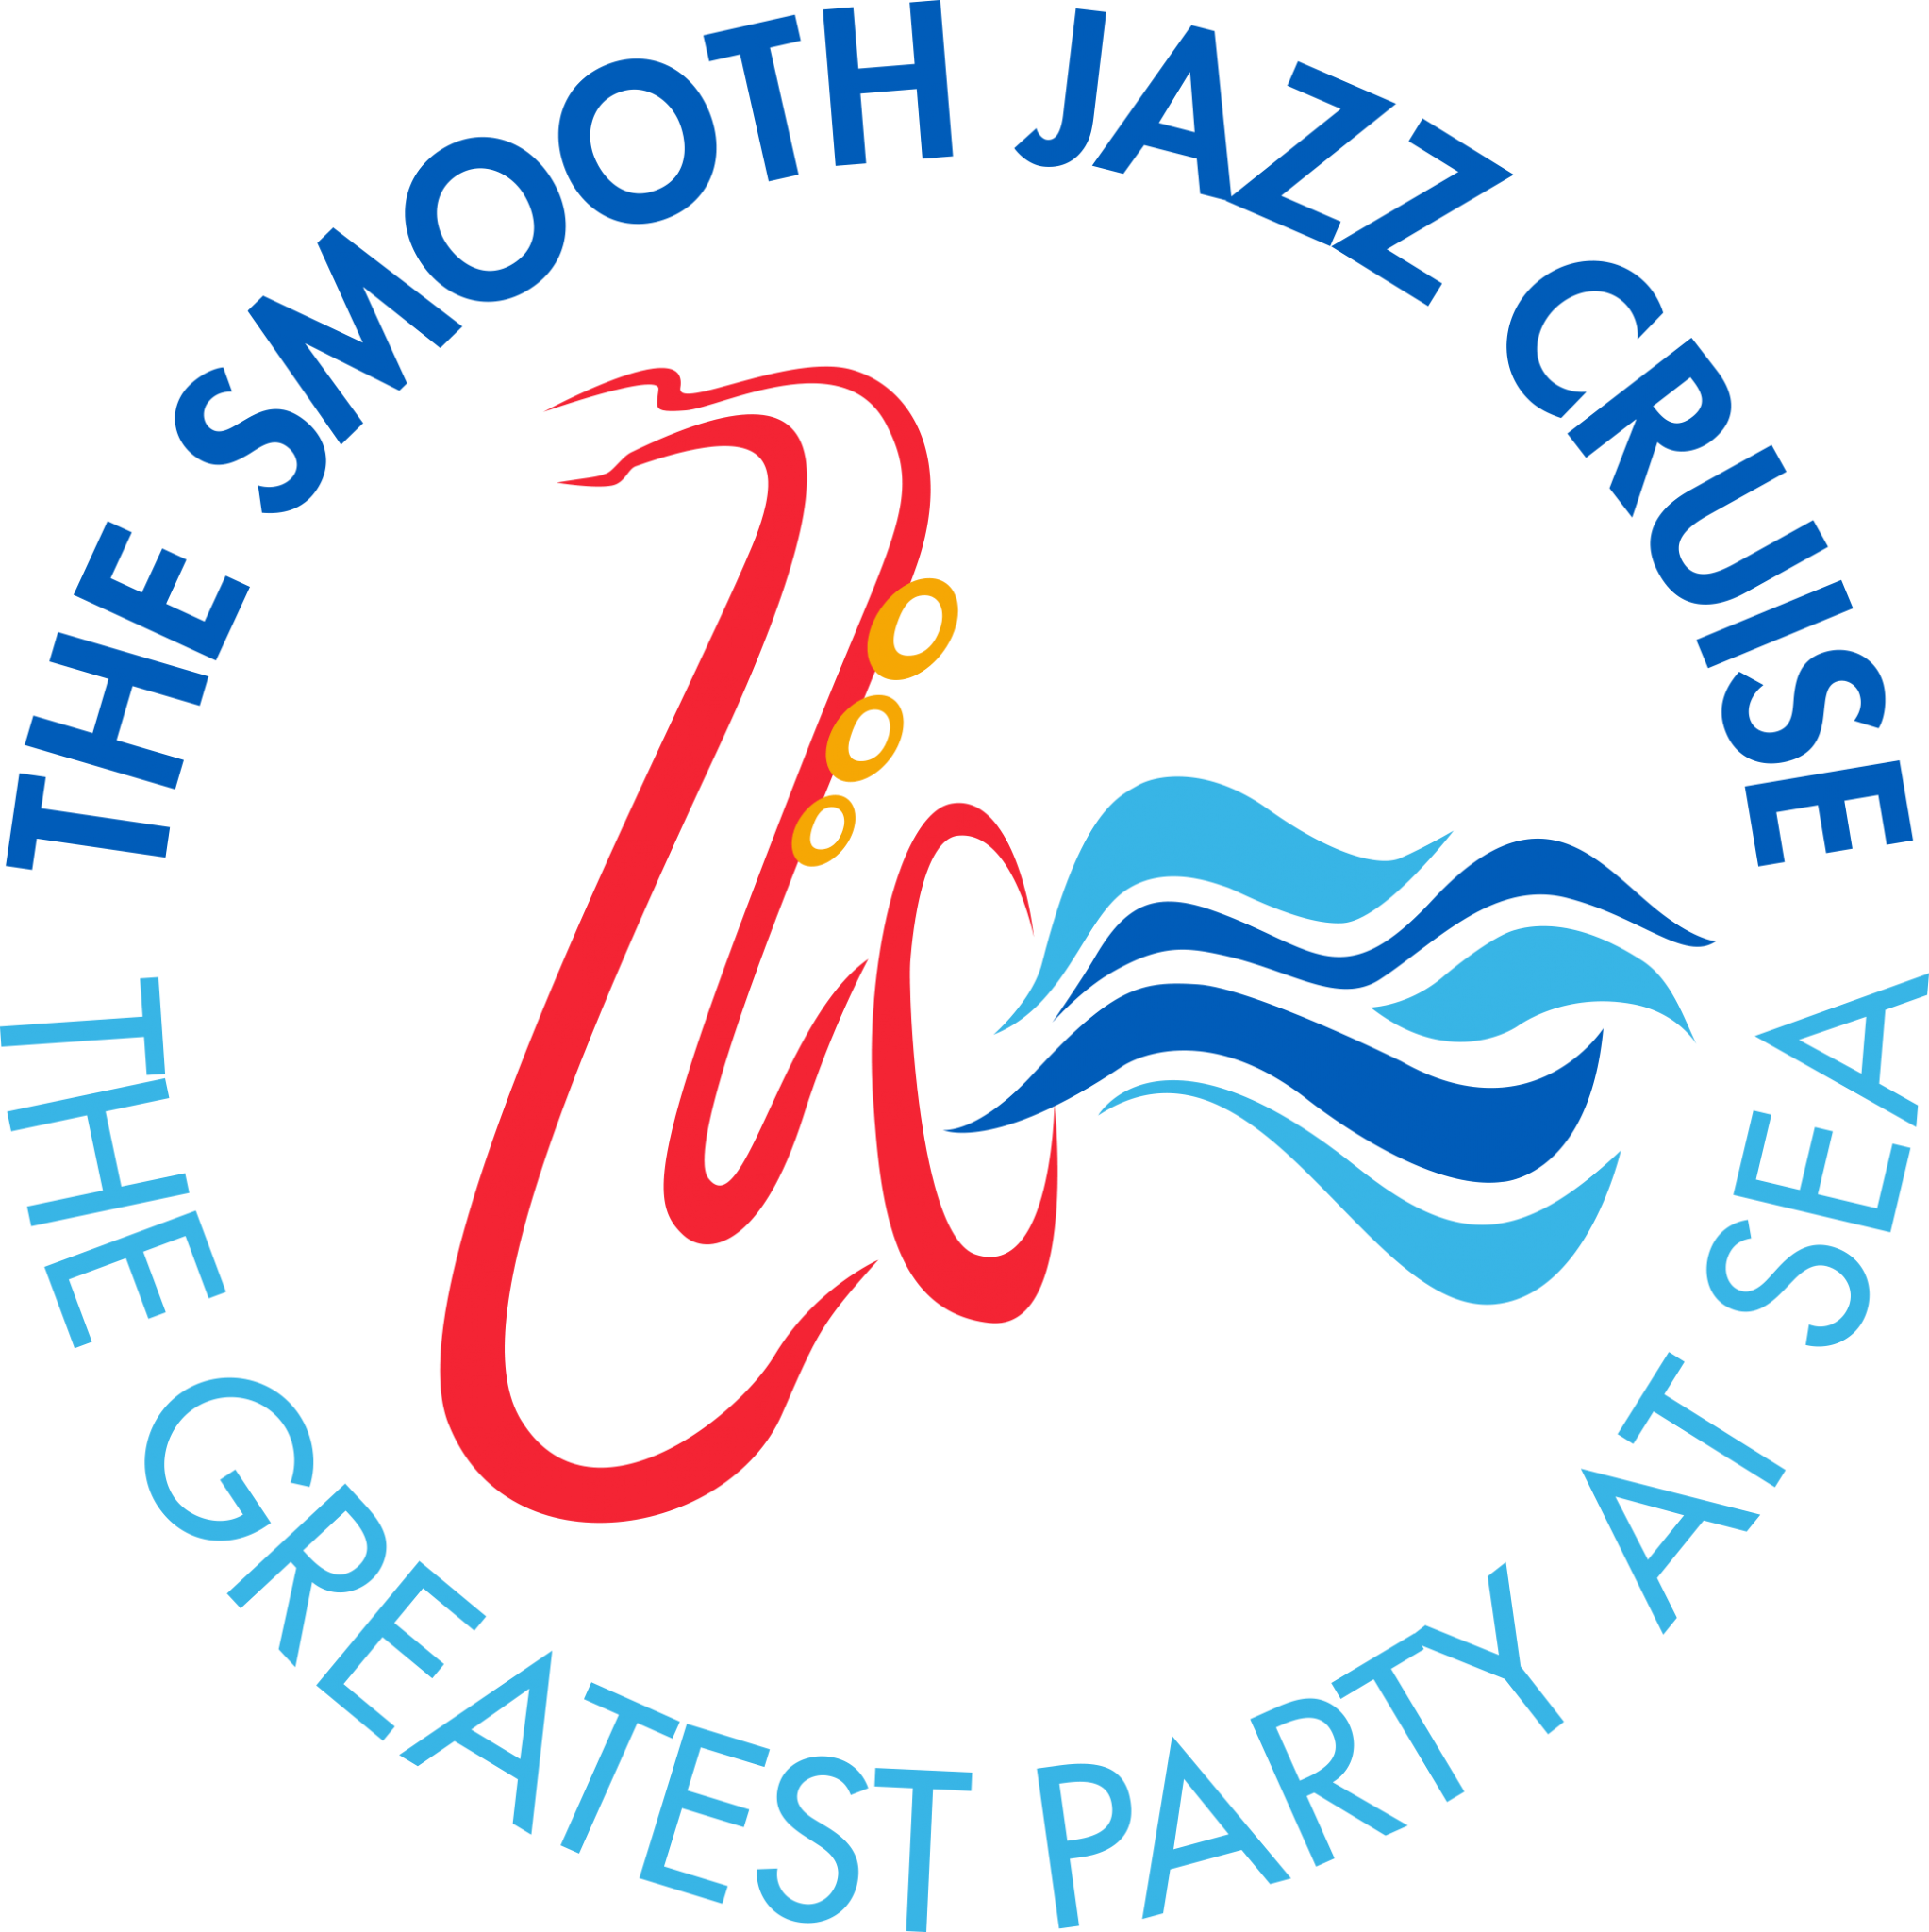 smooth jazz cruise 2022